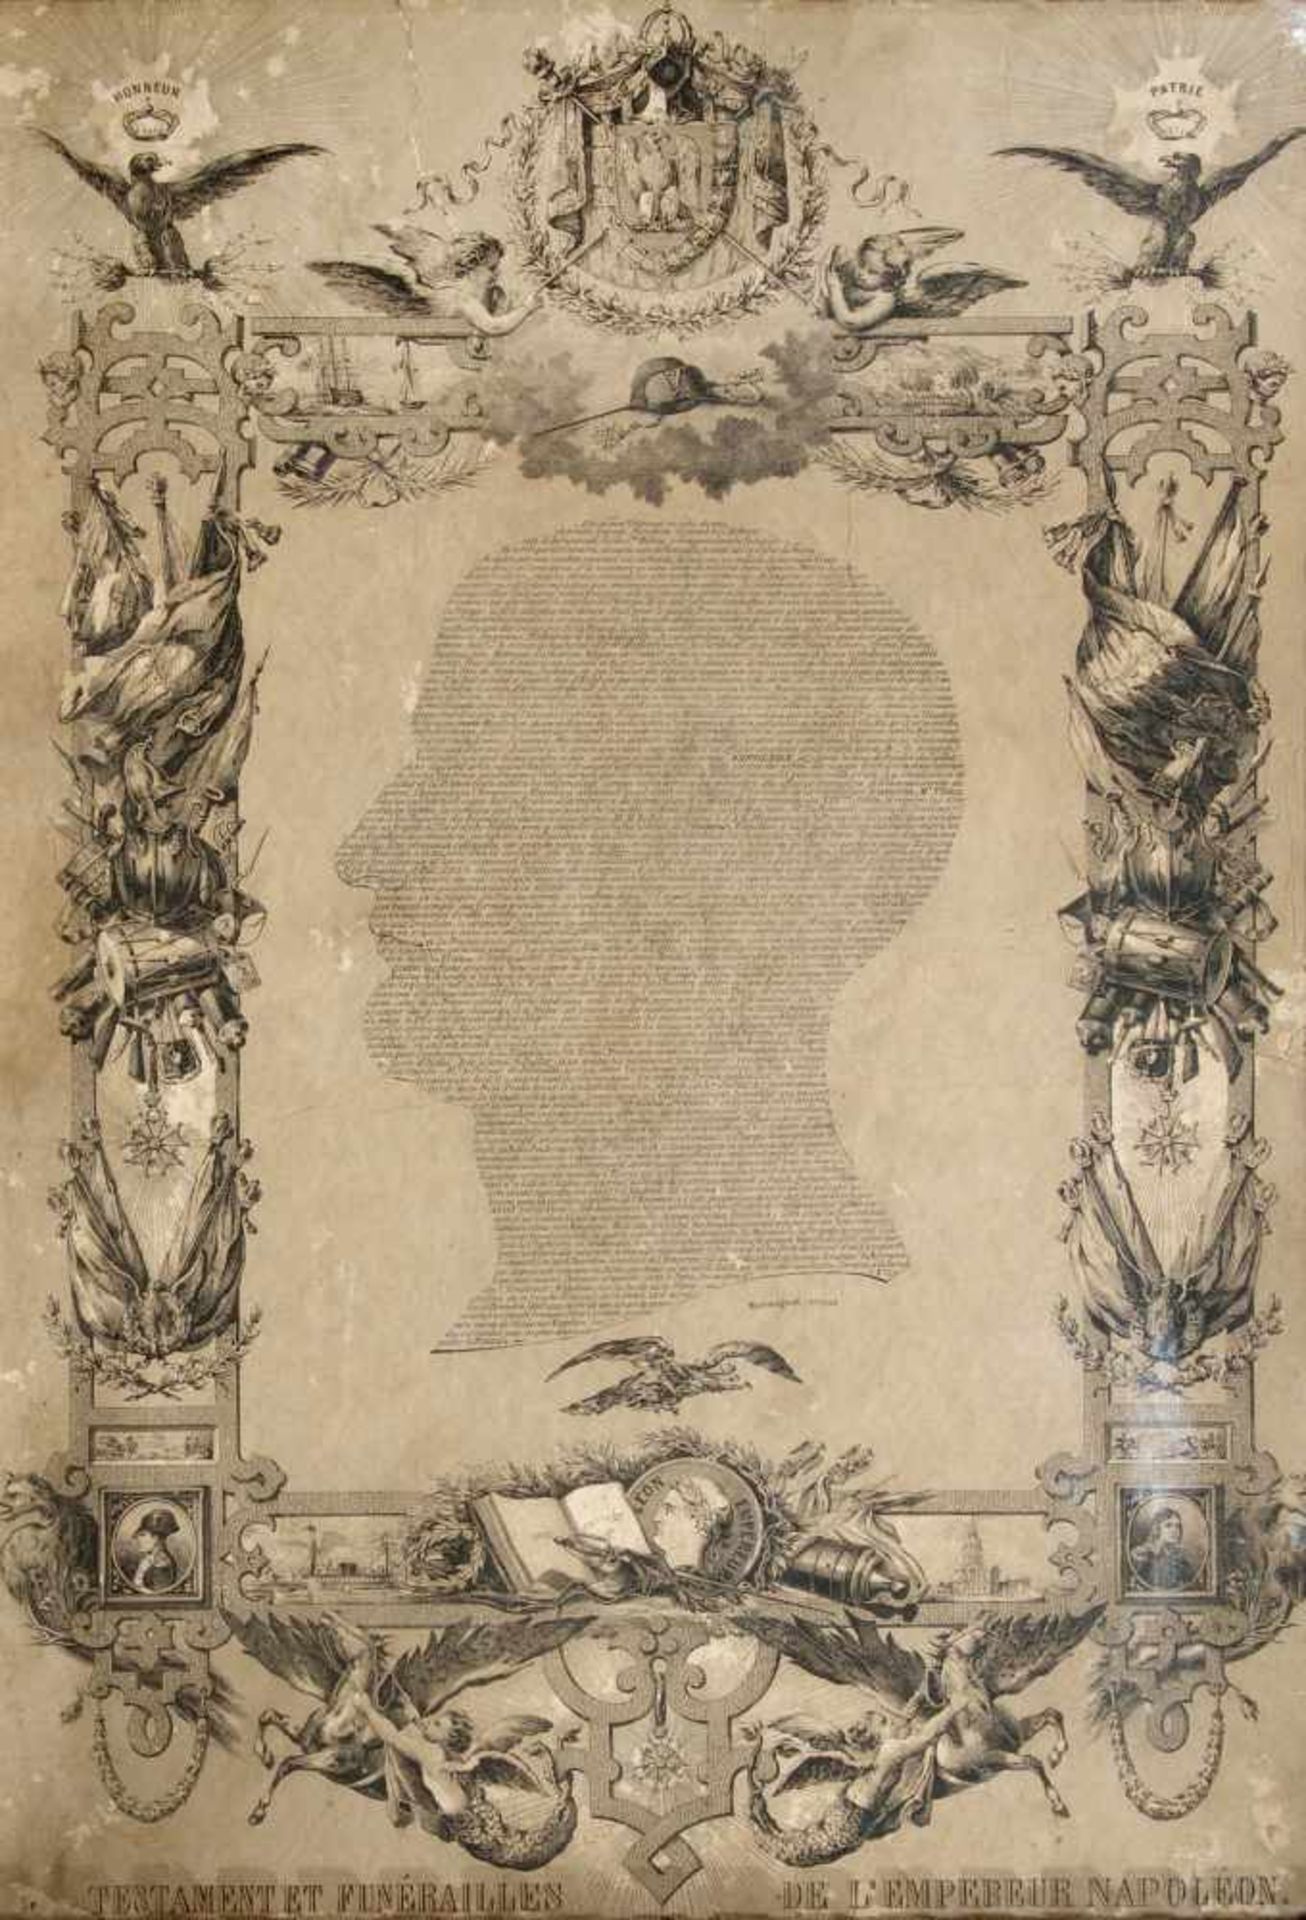 TESTAMENT DE NAPOLEON BONAPARTERare gravure datée de 1803 par Marmignat et dessinée par Deb